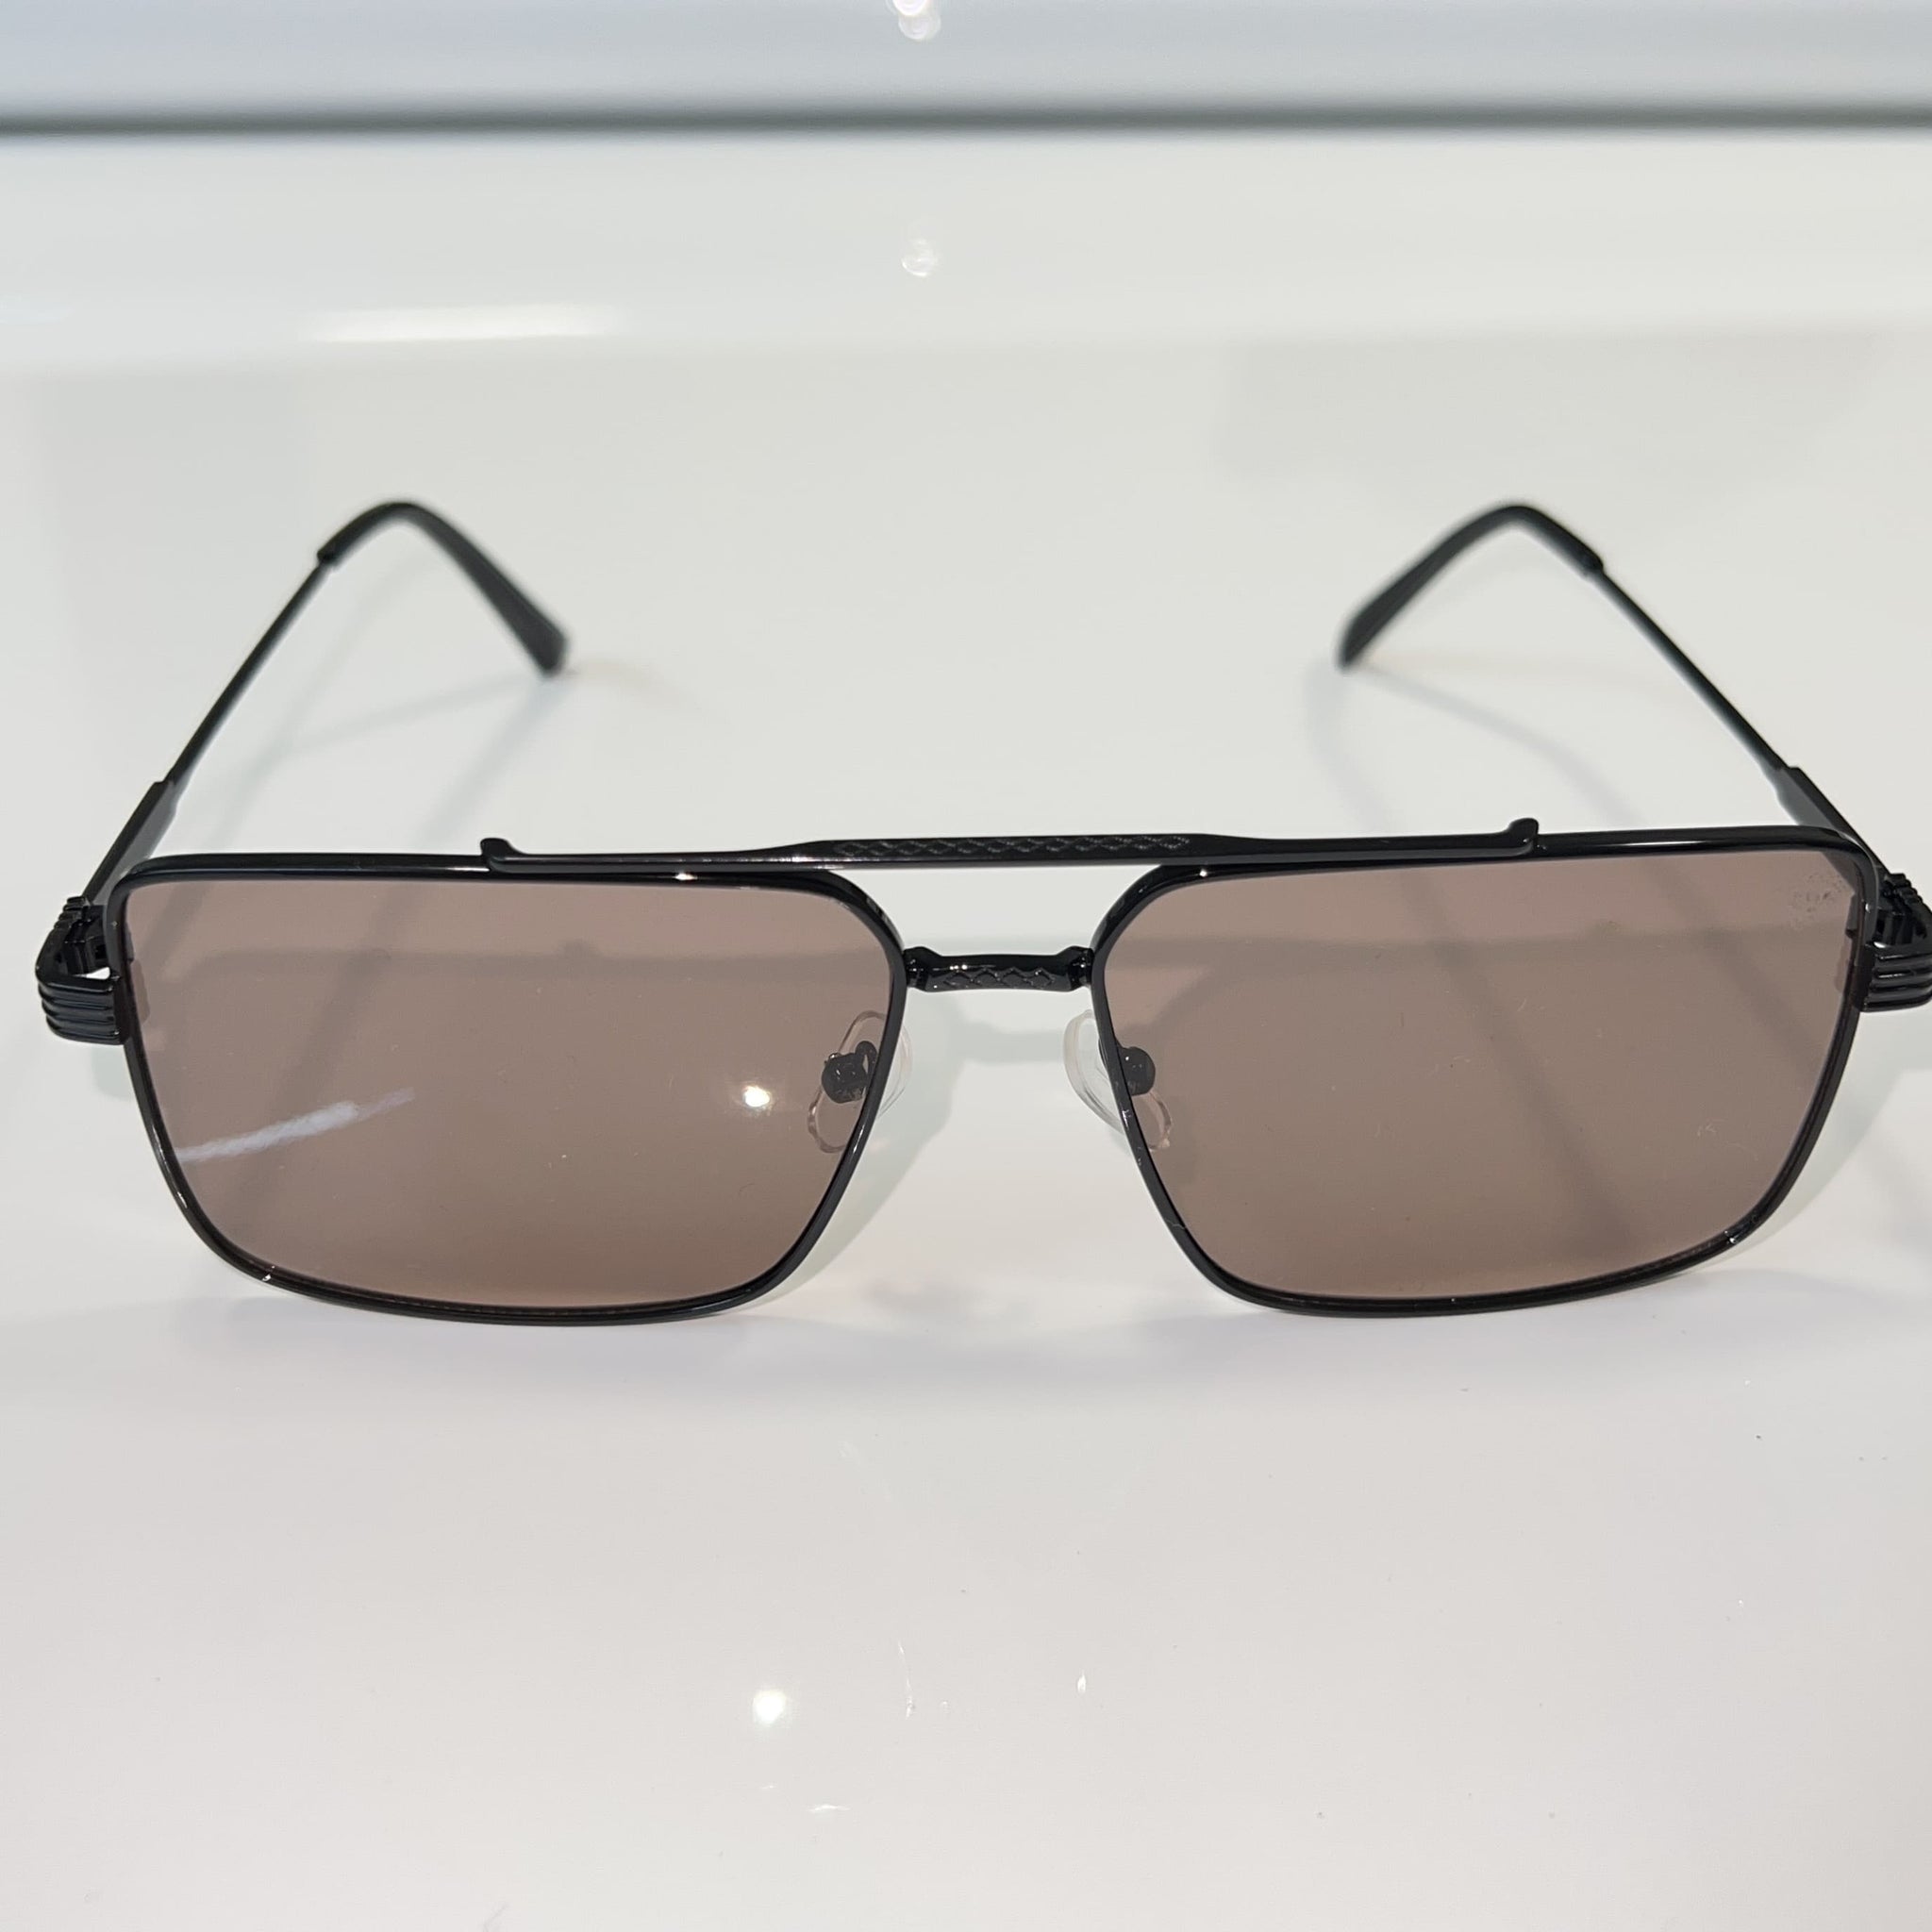 Billionaire Glasses - Brown Shade / Black Frame - Sehgal Glasses